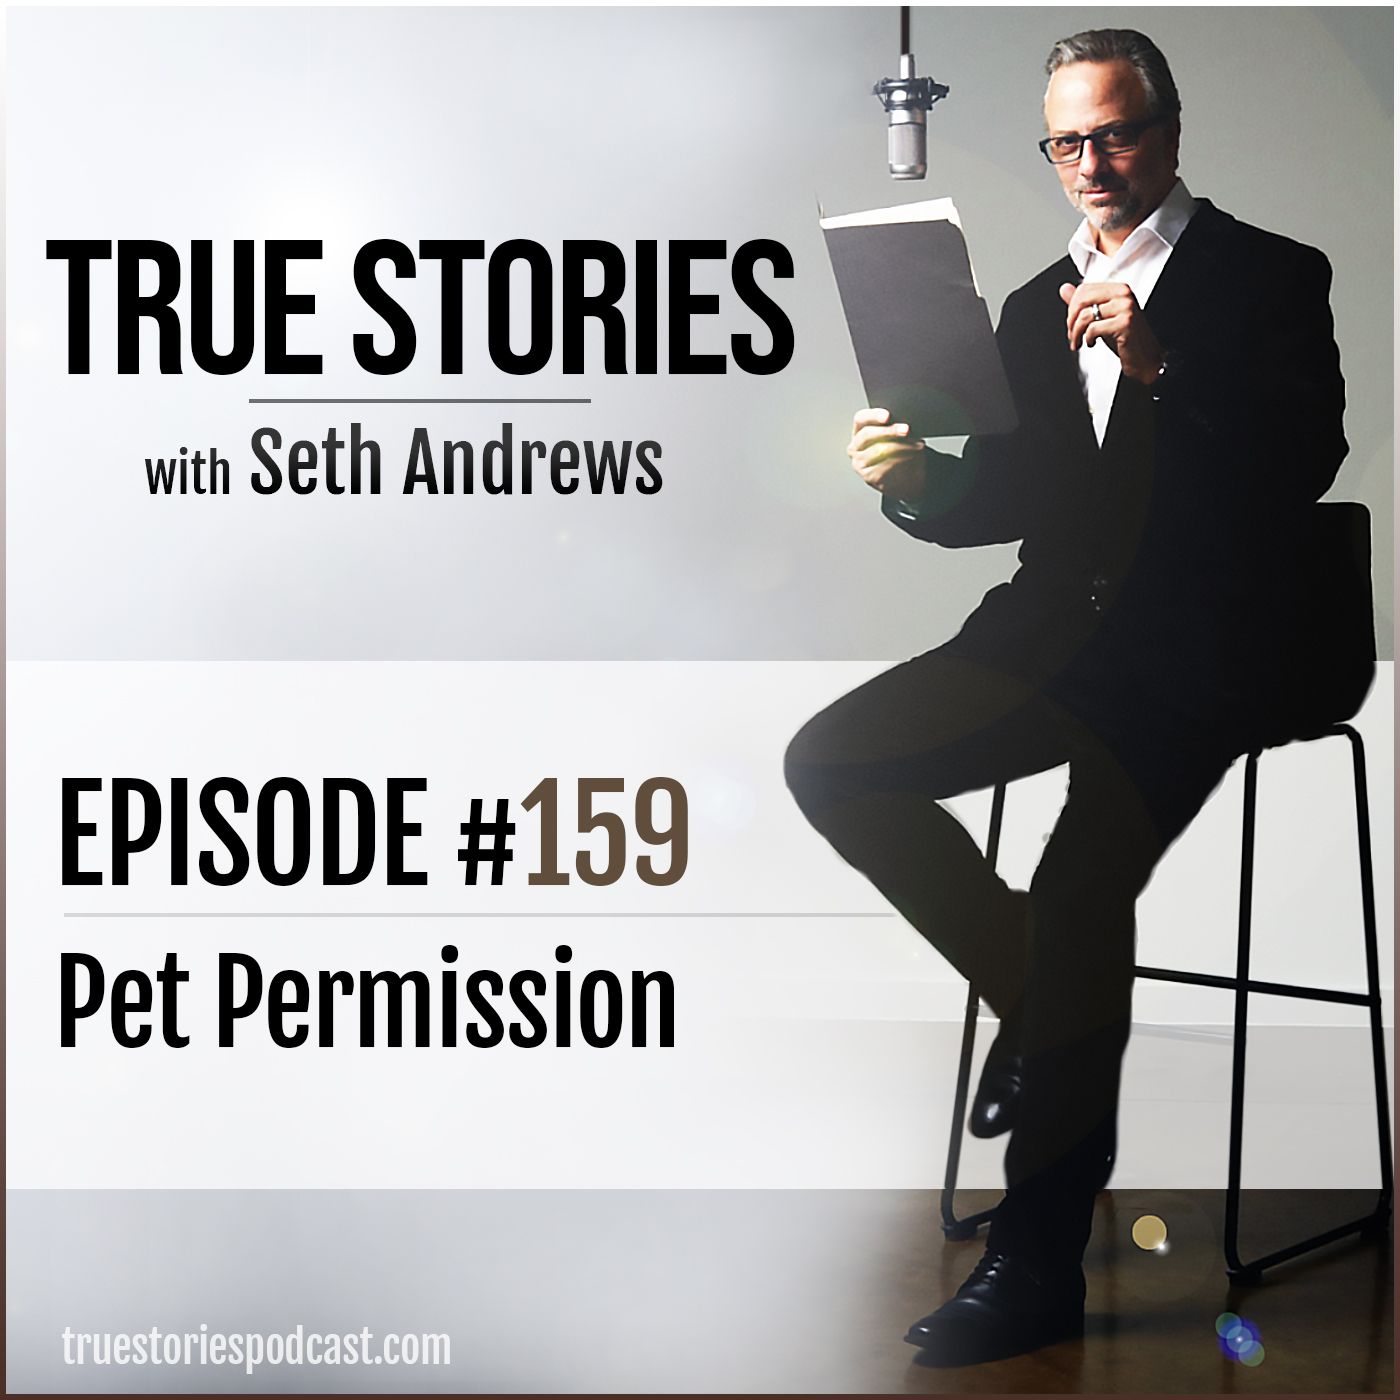 True Stories #159 - Pet Permission